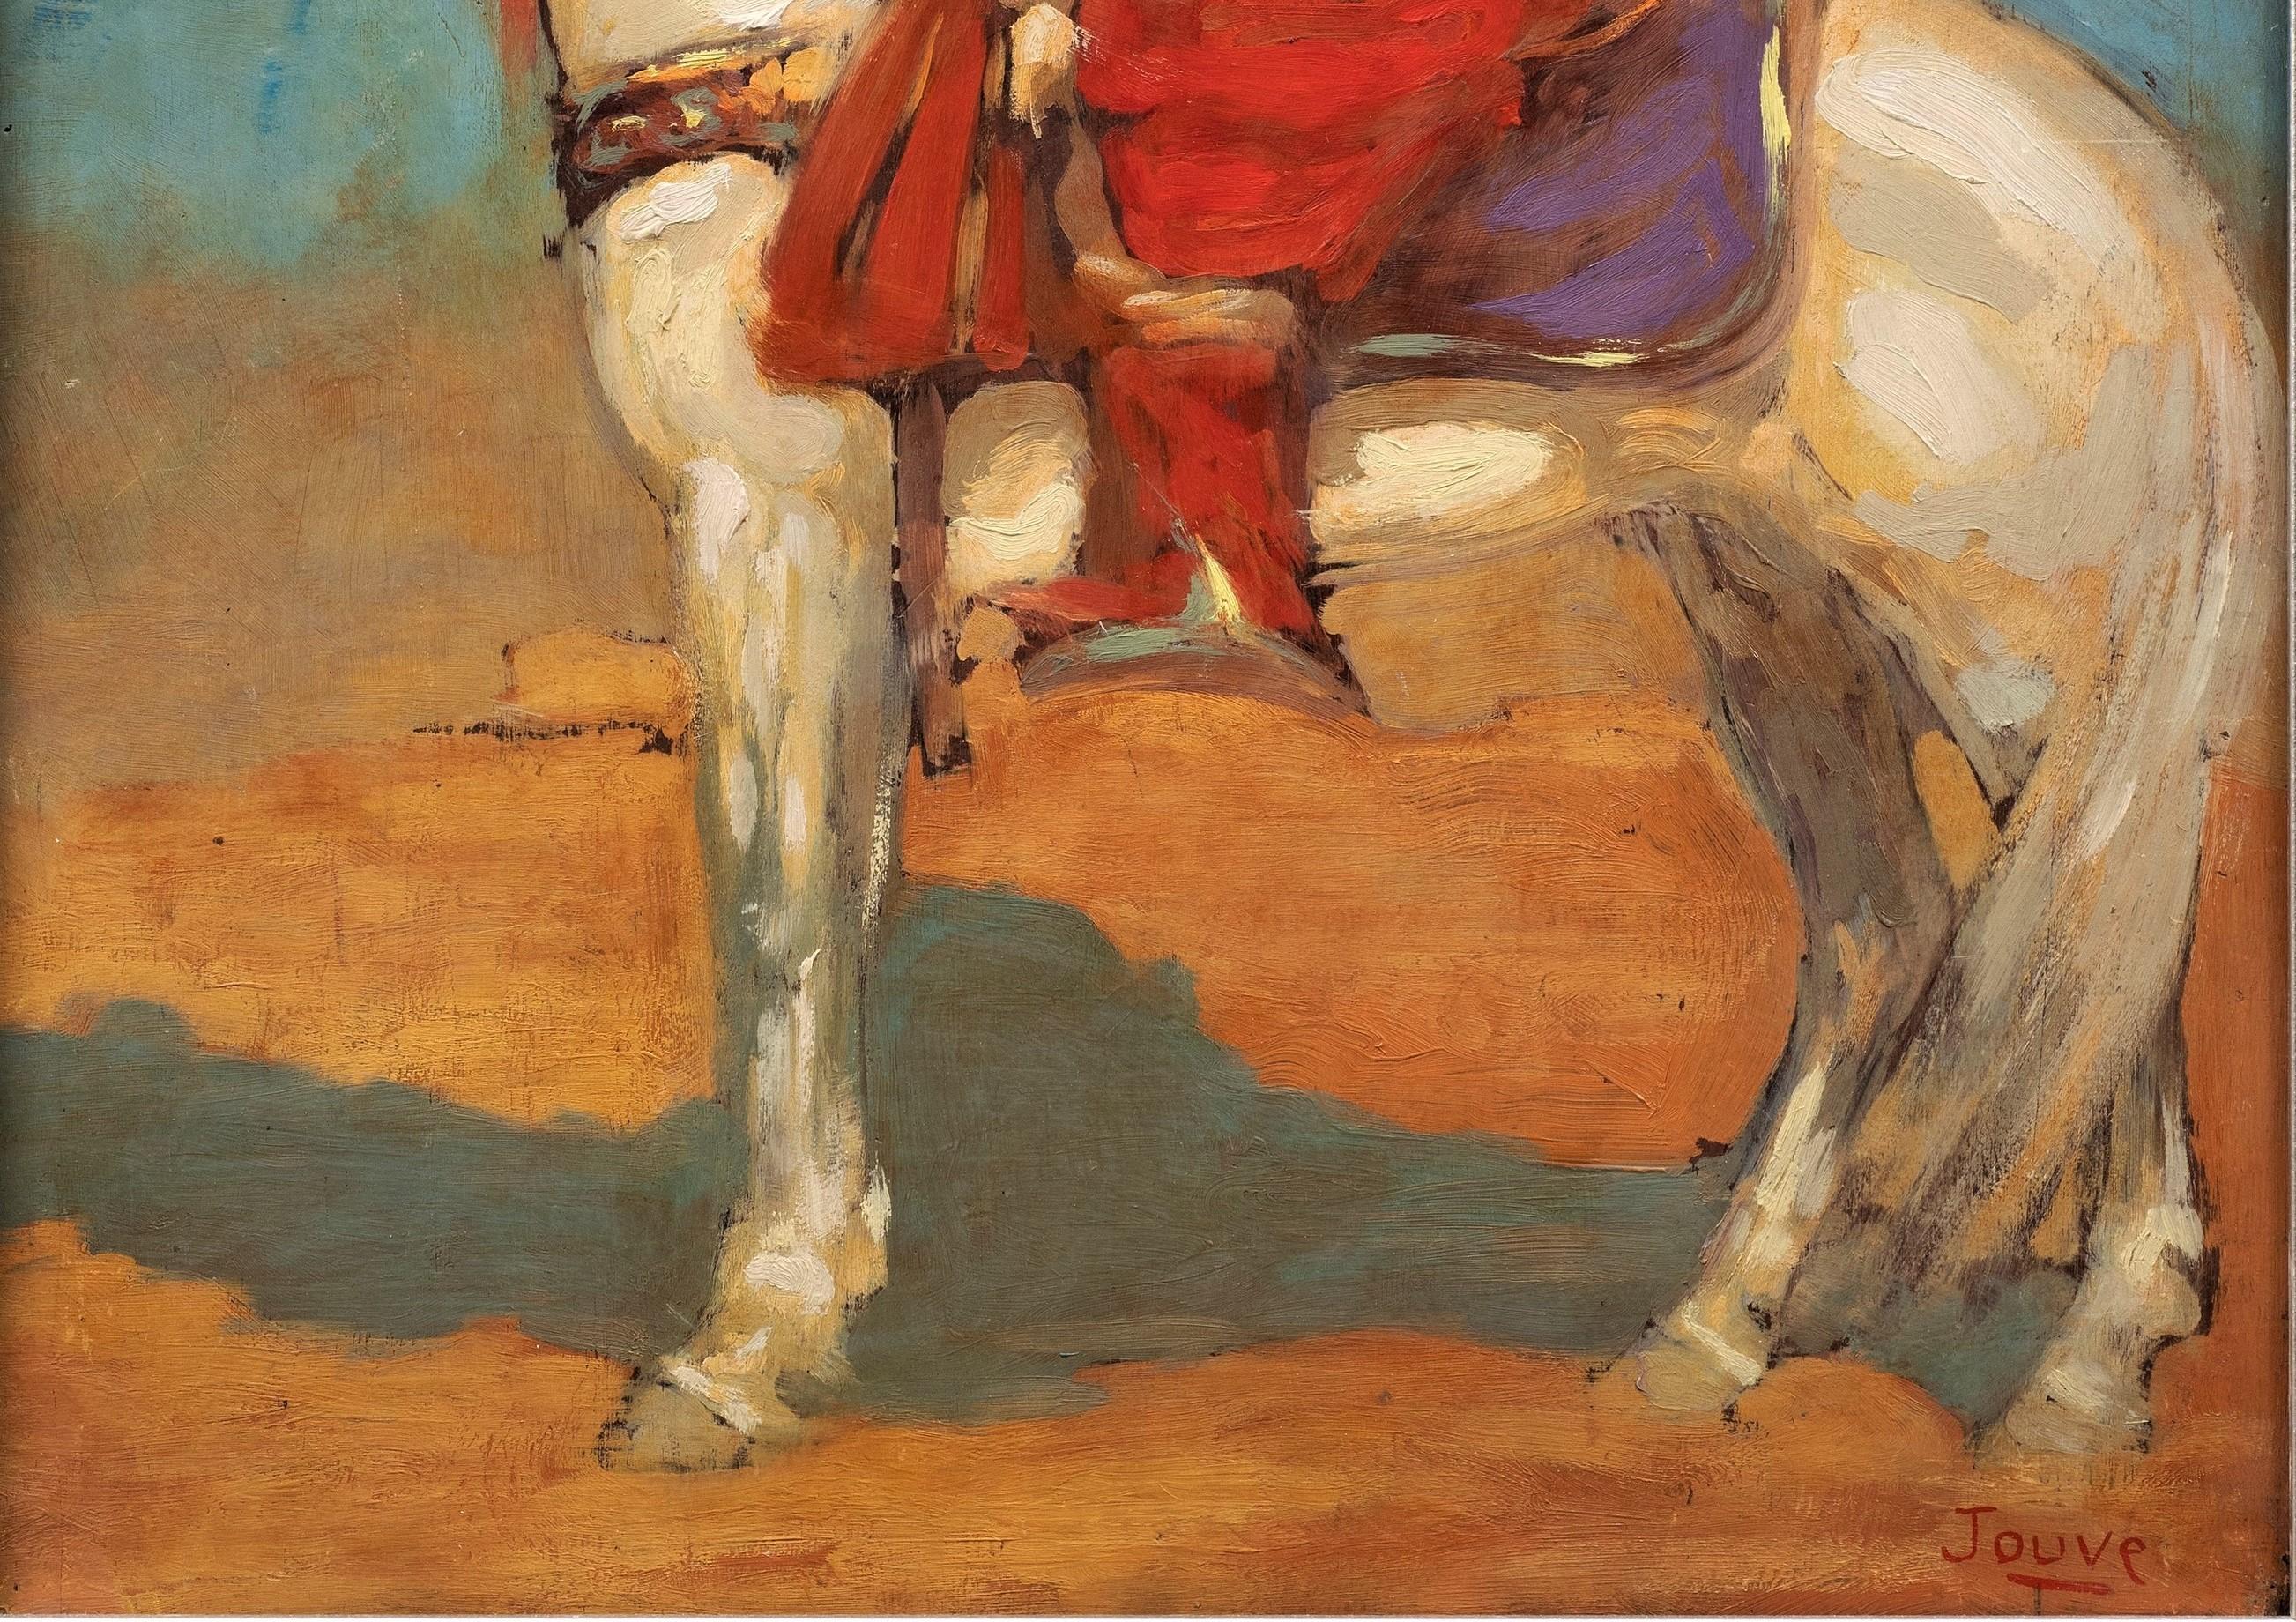 Tuareg-Reiter in der Wüste, 1908
Paul Jouve (1878-1973)
Öl auf Platte, rechts unten signiert.
27 ½ × 24 Zoll (21 ¾ × 17 1/2 Rahmen) Zoll

Das Werk von Paul Jouve wird seit über 100 Jahren gefeiert und gesammelt. Sein Talent war so ausgeprägt, dass